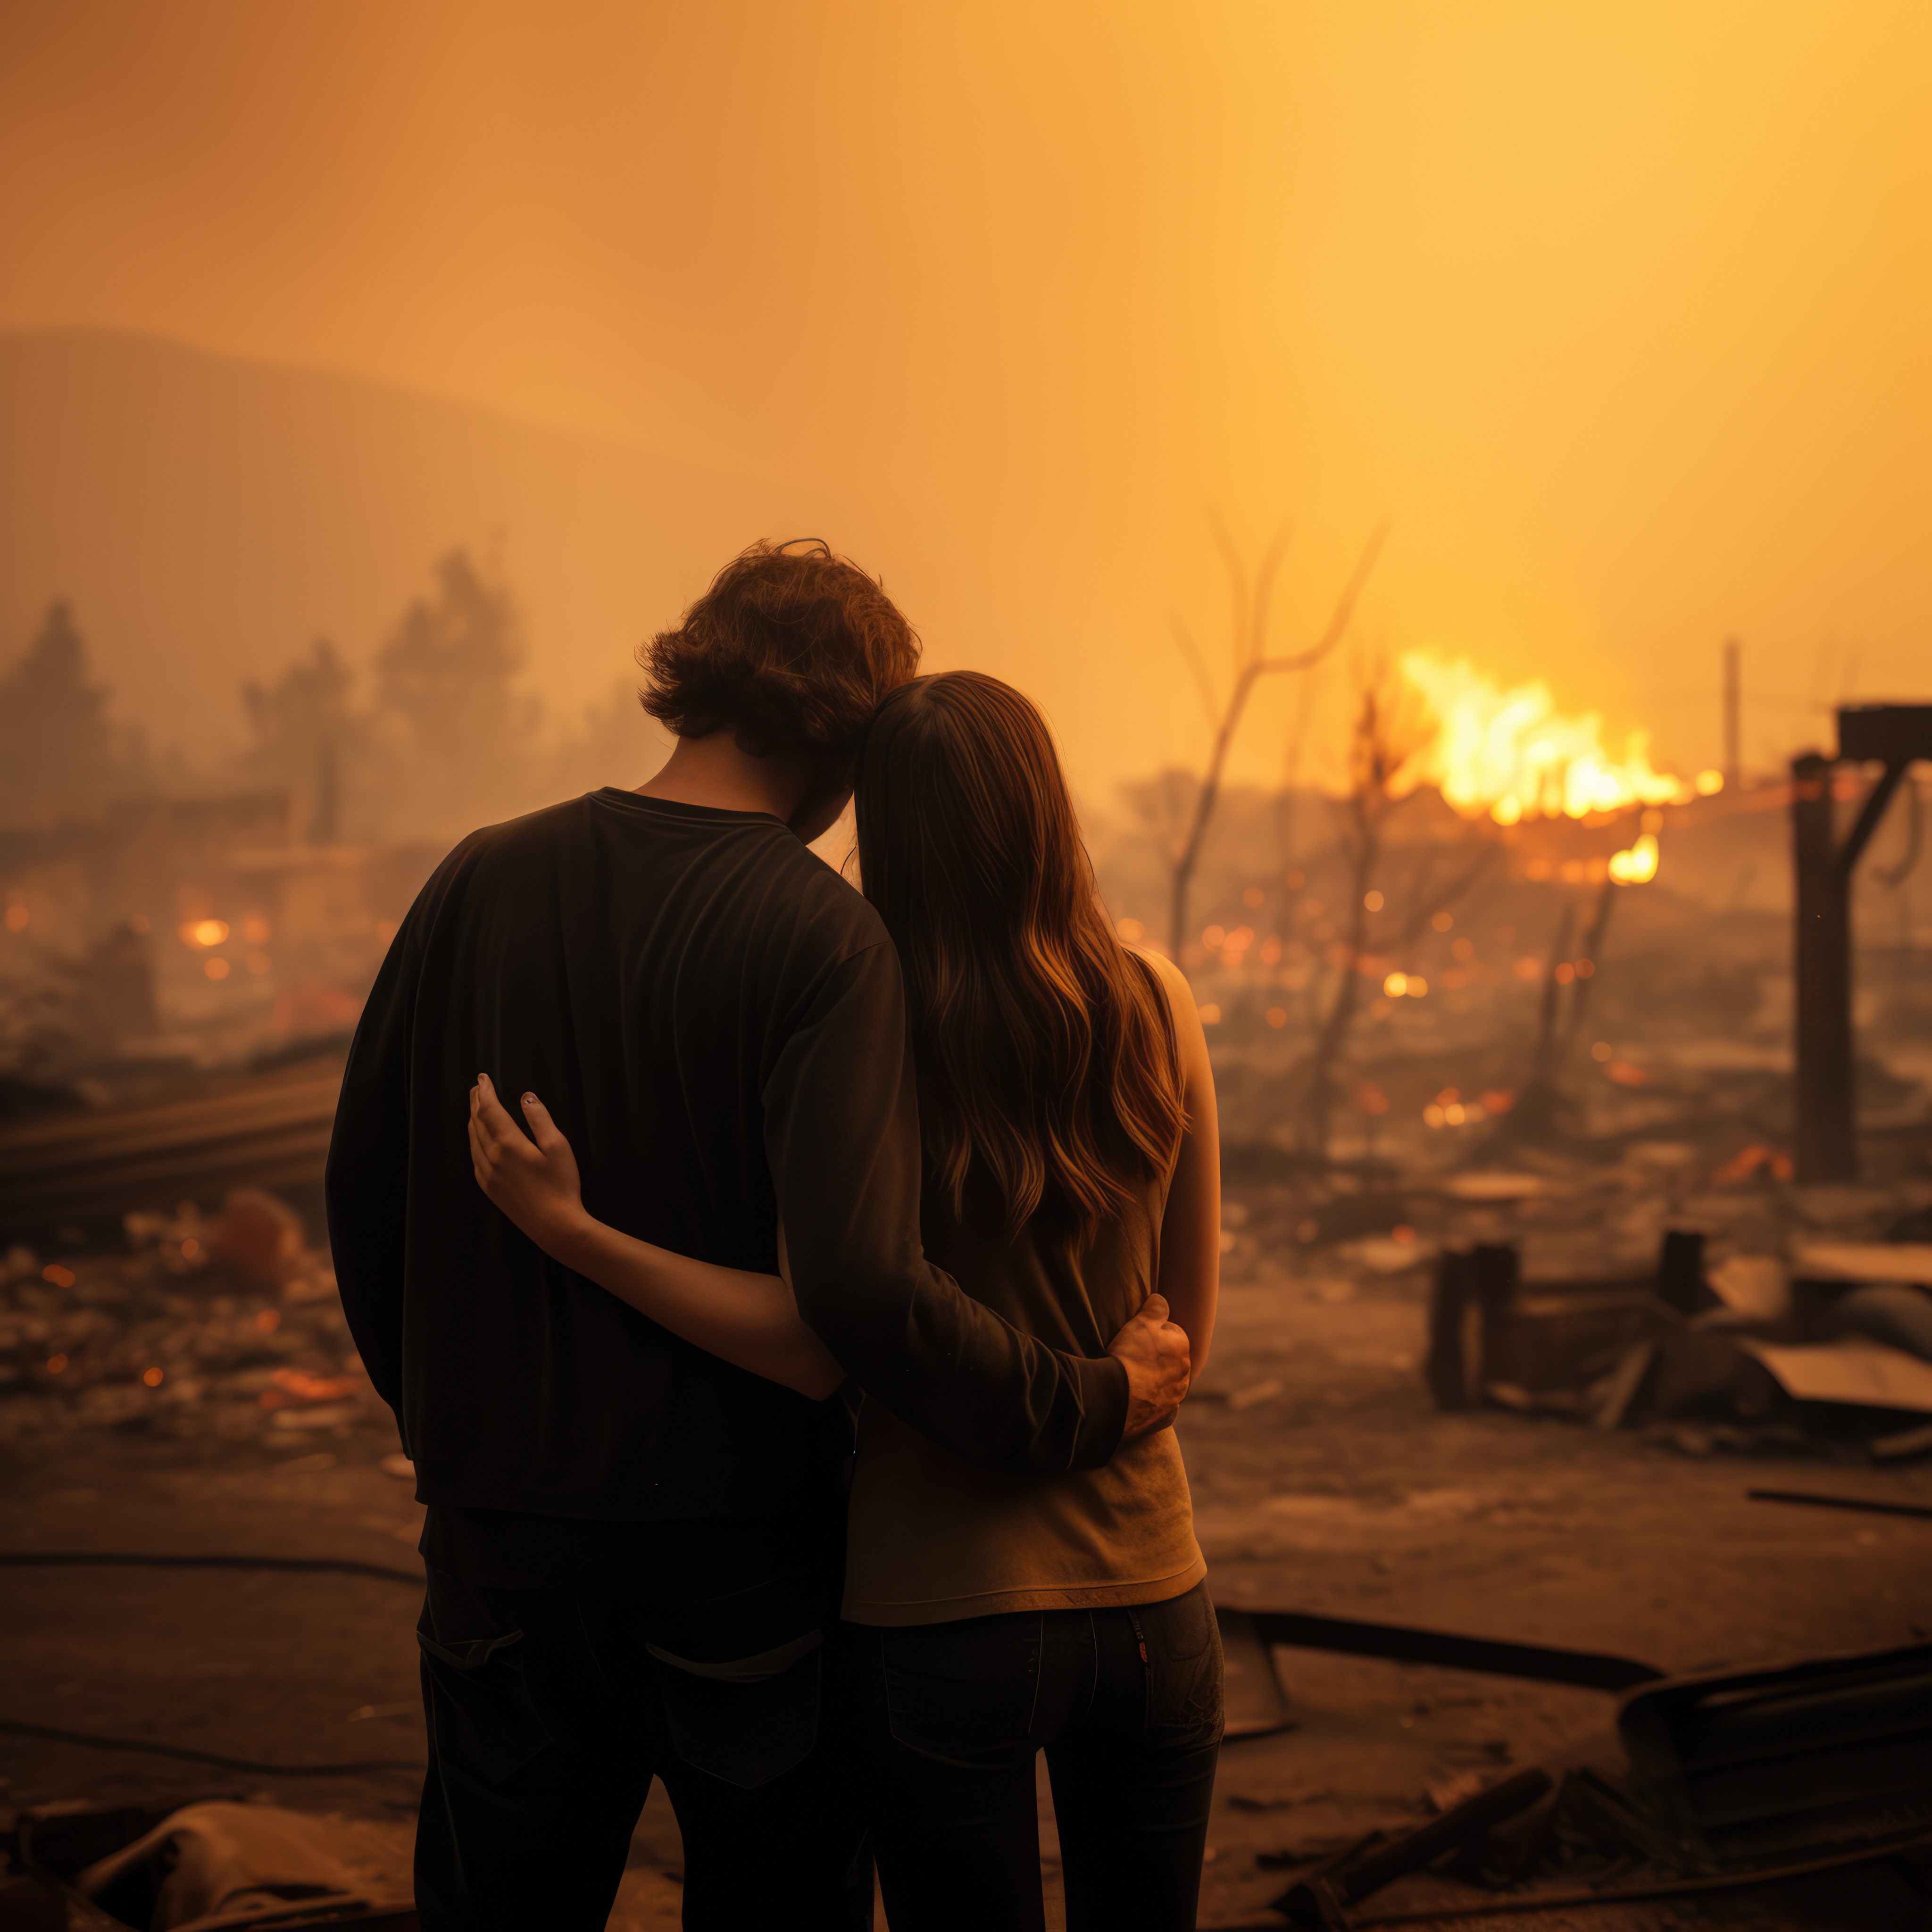 Un couple regarde les décombres après l'incendie de leur maison. À des fins d'illustration uniquement | Source : Freepik